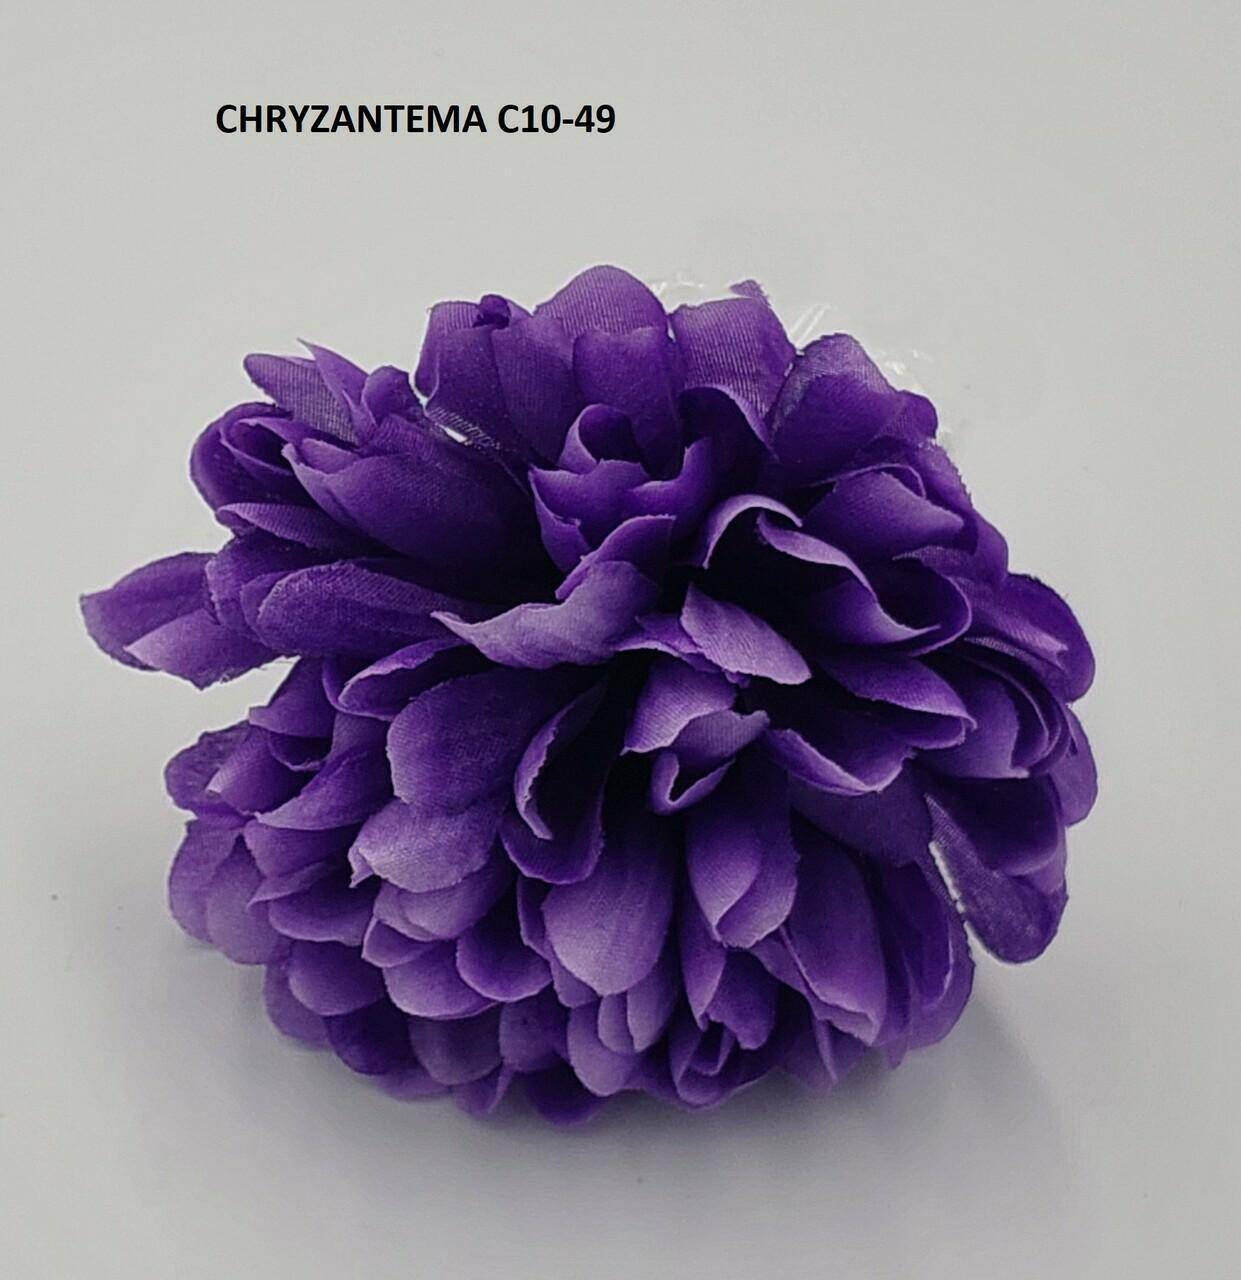 Chryzanetma C10-049 Fiolet 12szt.